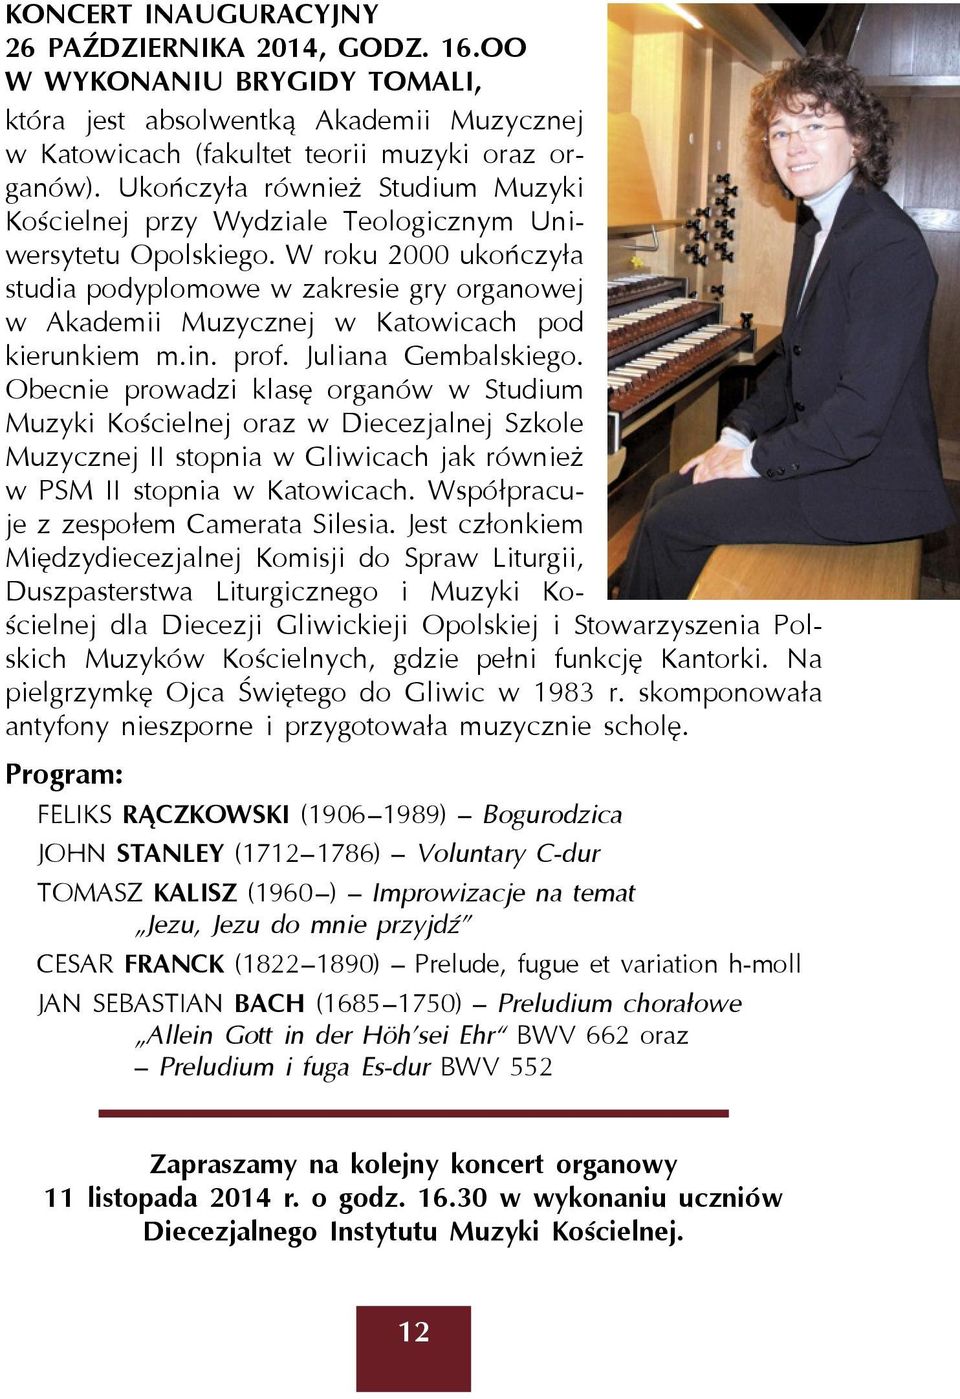 W roku 2000 ukończyła studia podyplomowe w zakresie gry organowej w Akademii Muzycznej w Katowicach pod kierunkiem m.in. prof. Juliana Gembalskiego.